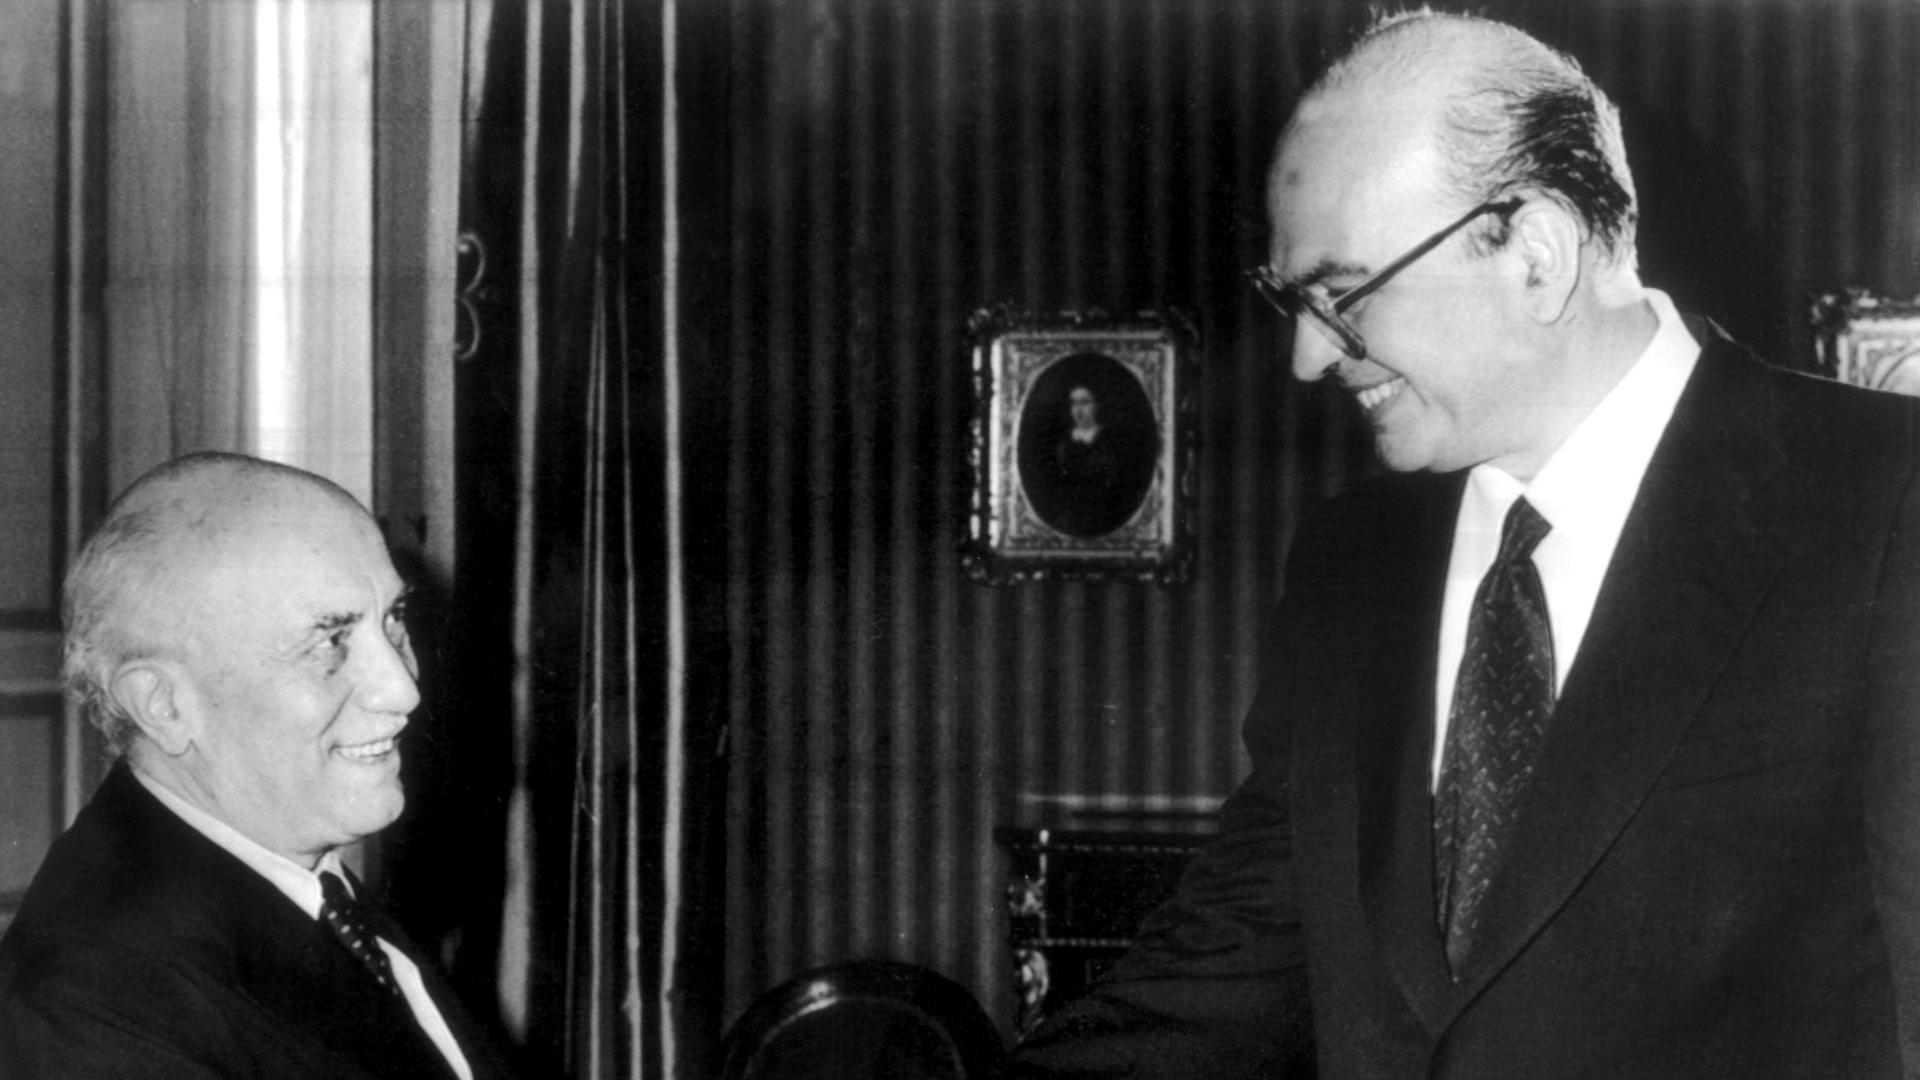 Eine zentrale Figur im "mani pulite"-Skandal: Italiens langjähriger Regierungschef und PSI-Vorsitzender Bettino Craxi (r.) hier 1979 mit dem christdemokratischen Senatspräsidenten Amintore Fanfani in Rom